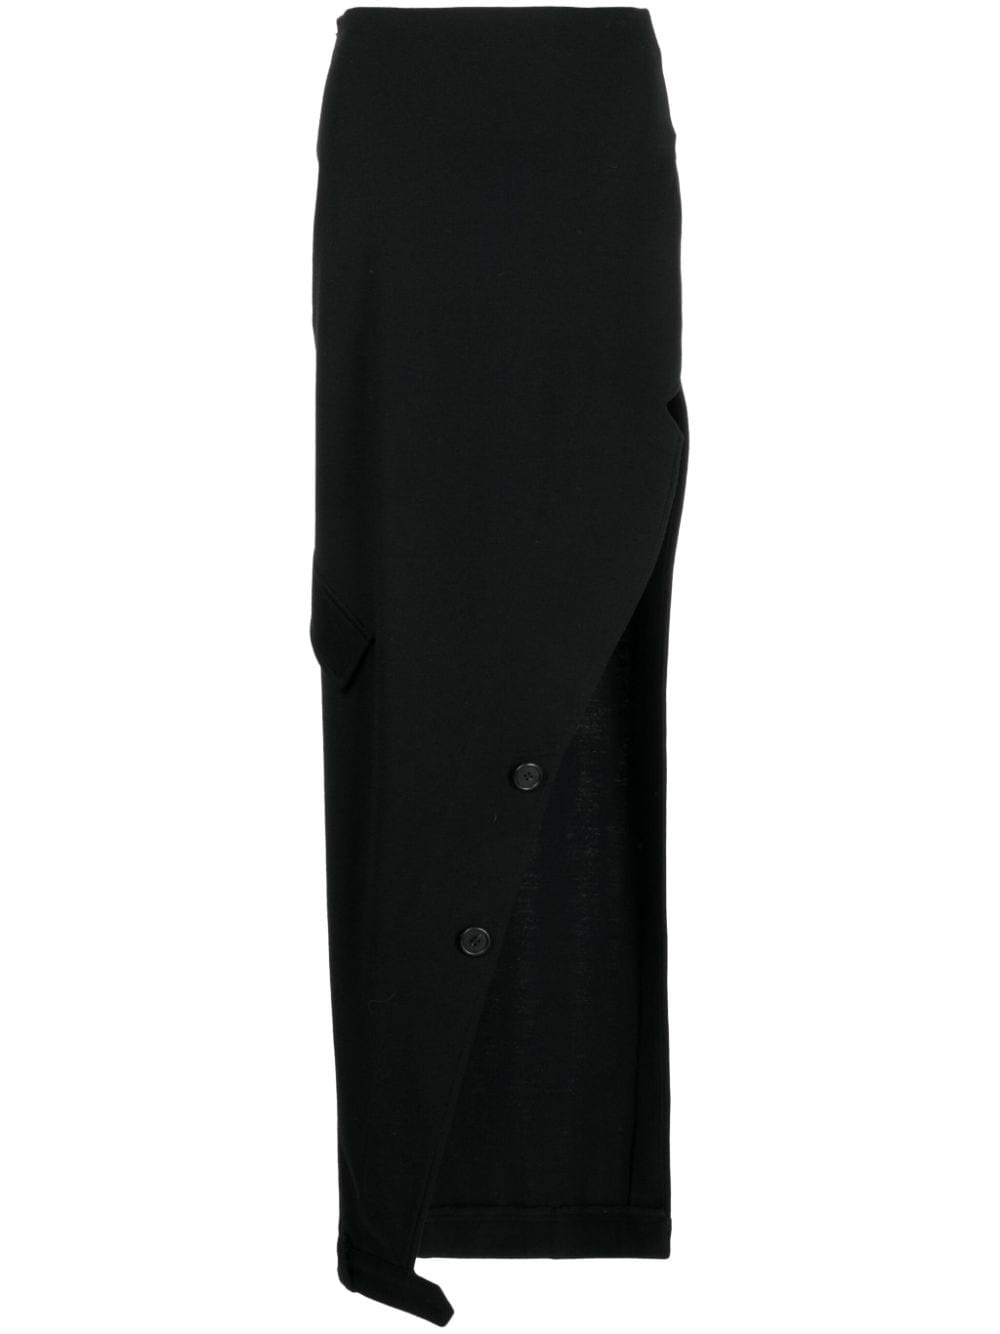 high-waisted cotton skirt - 1